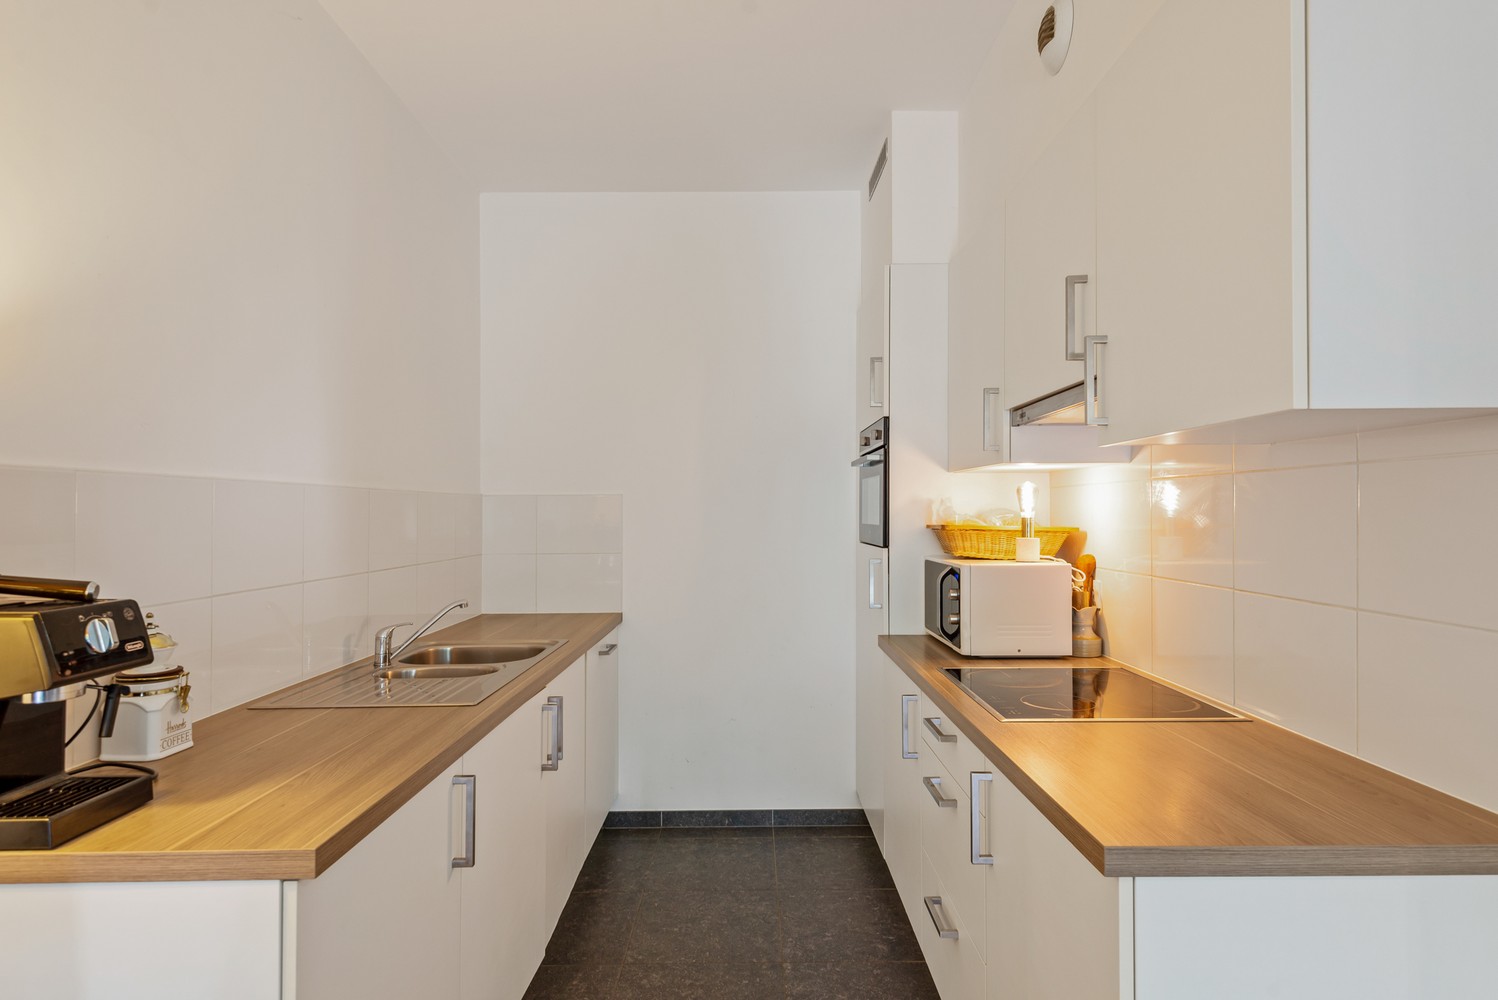 Recent, hedendaags gelijkvloers appartement met 2 slaapkamers & terras in Deurne! afbeelding 10